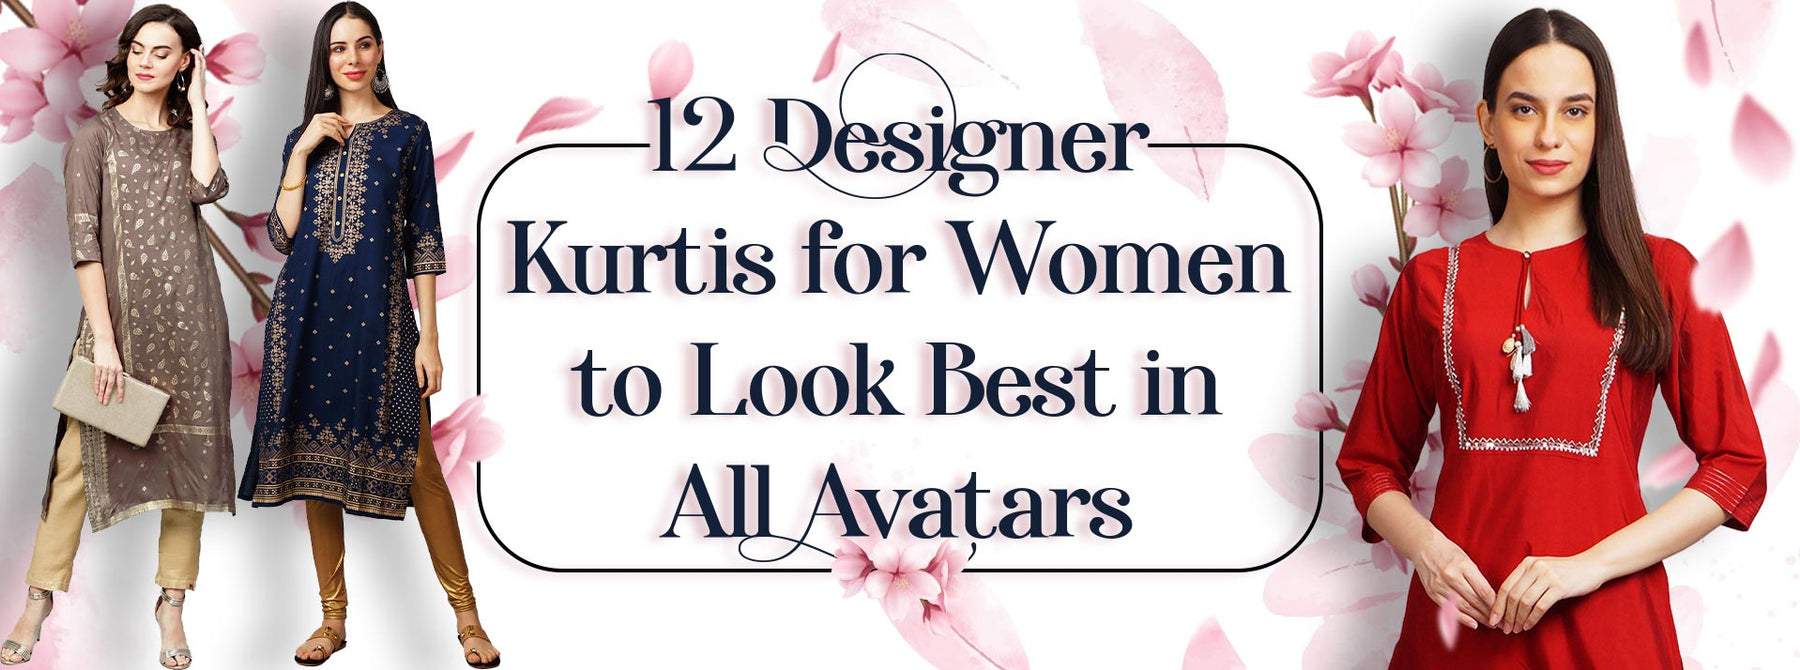 12 Designer Kurtis for Women to look Best in all Avatars